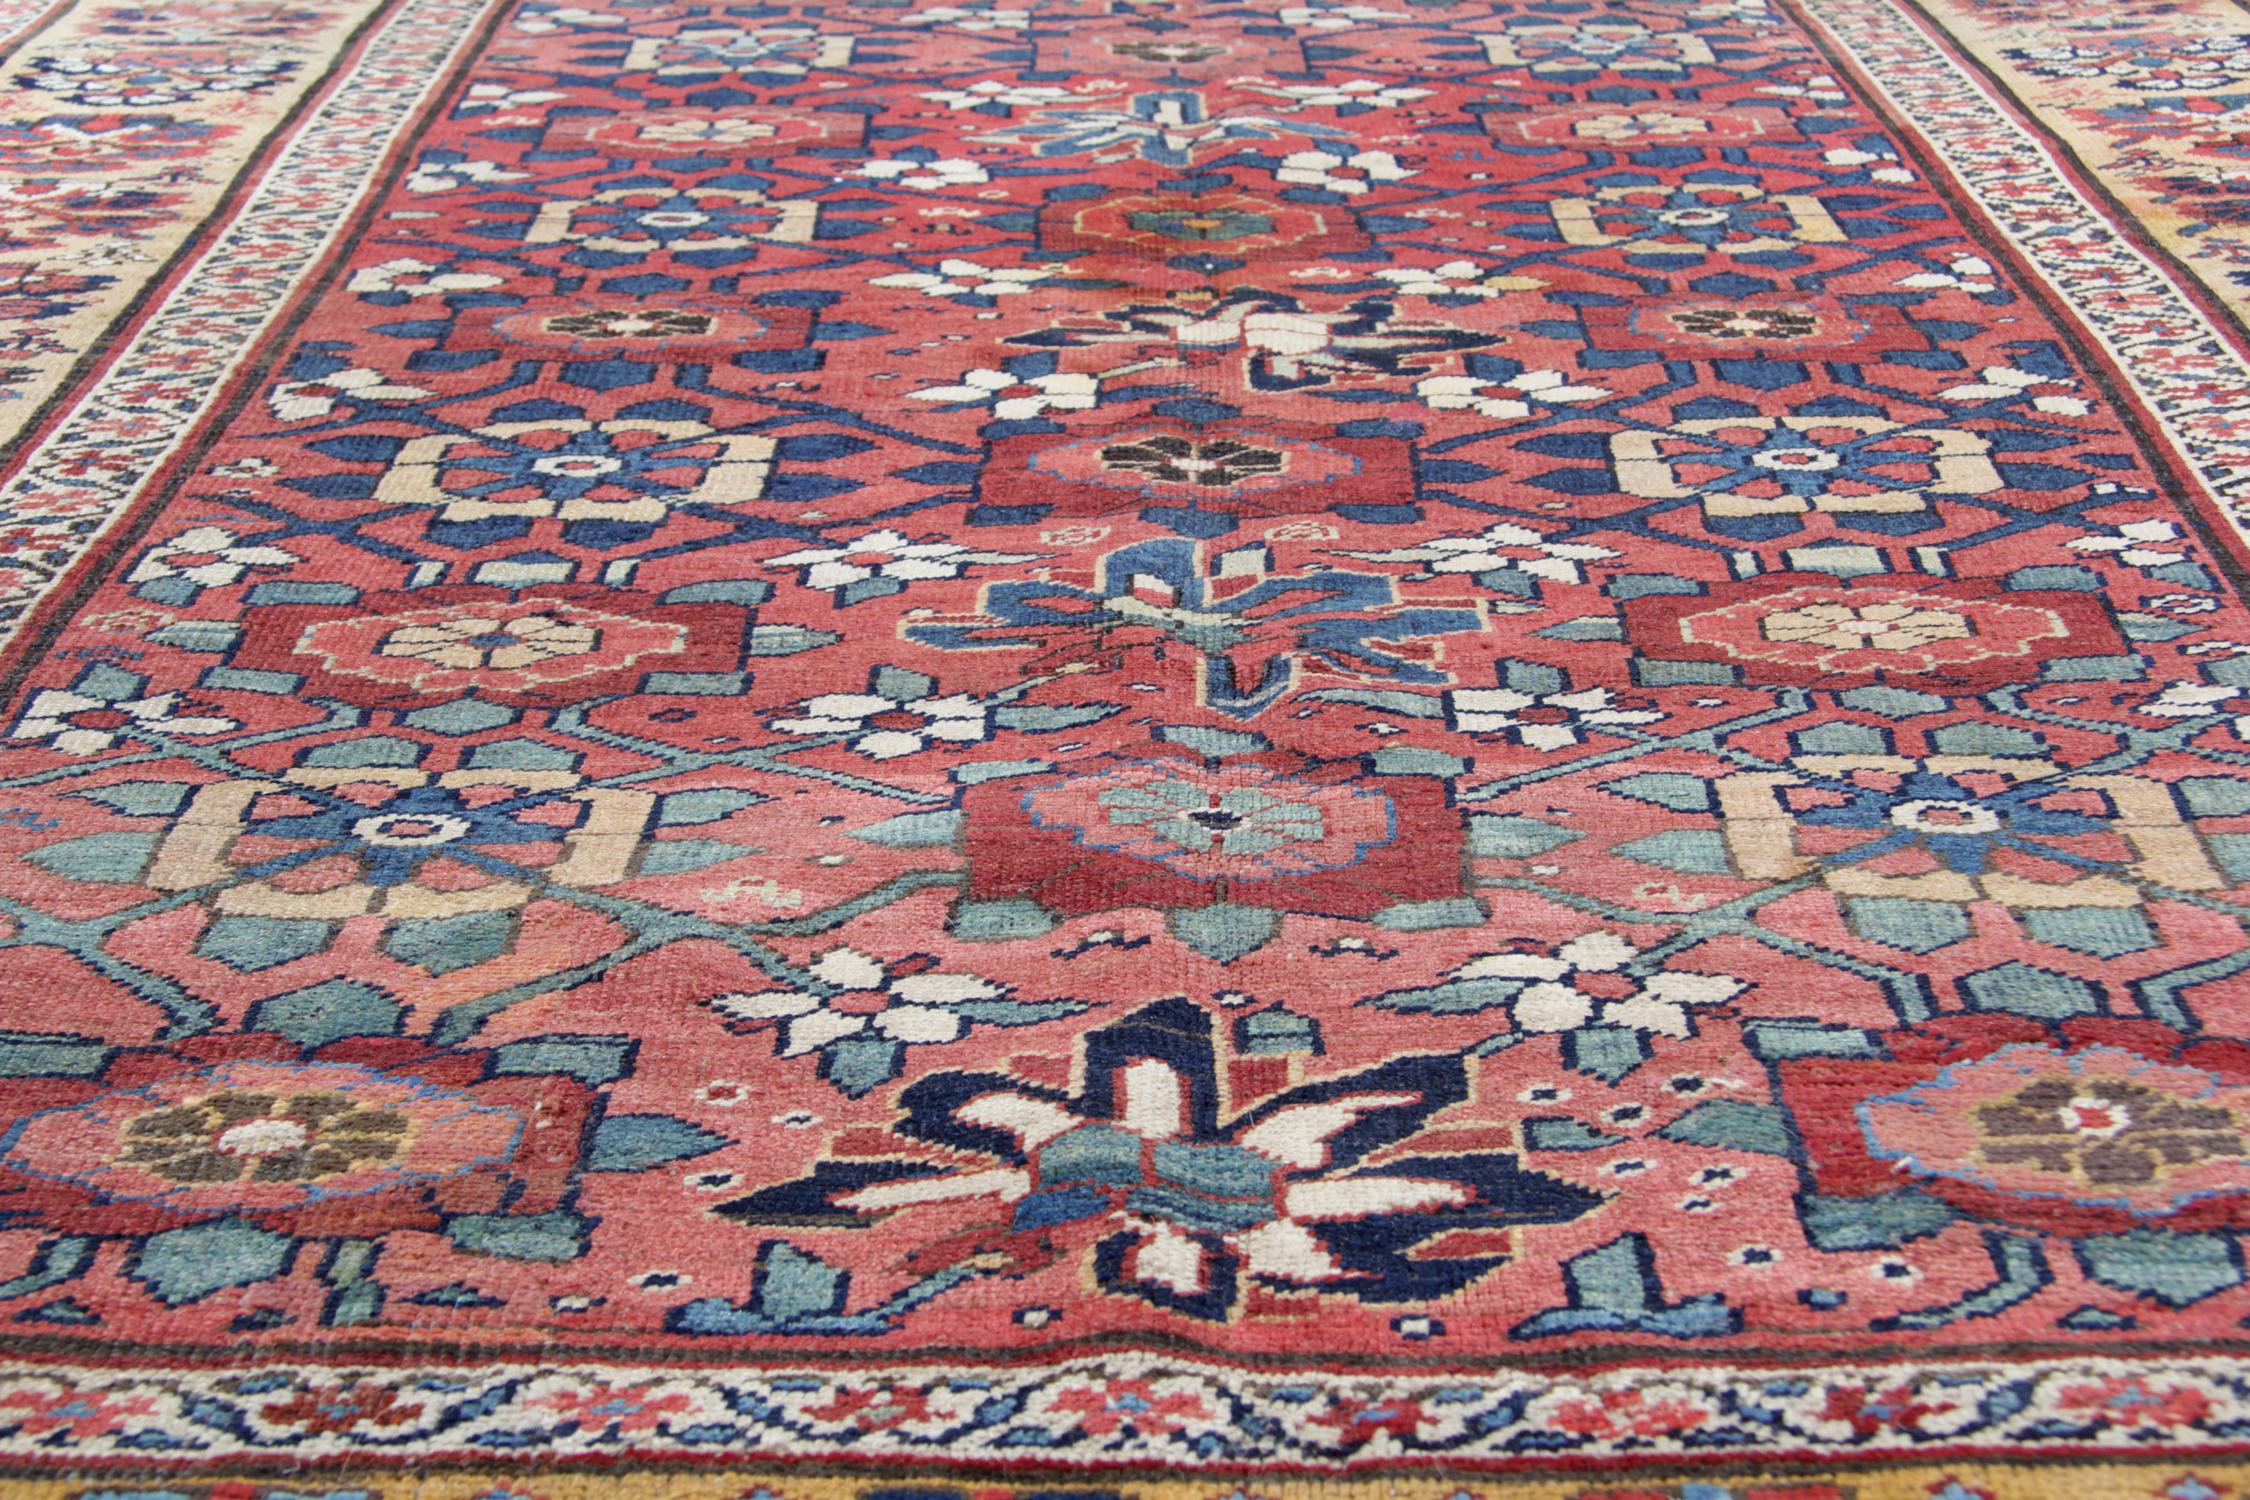 Kazak Antique Rug Rust Carpet Zeigler Oriental Floral Livingroom Rug CHR45 For Sale